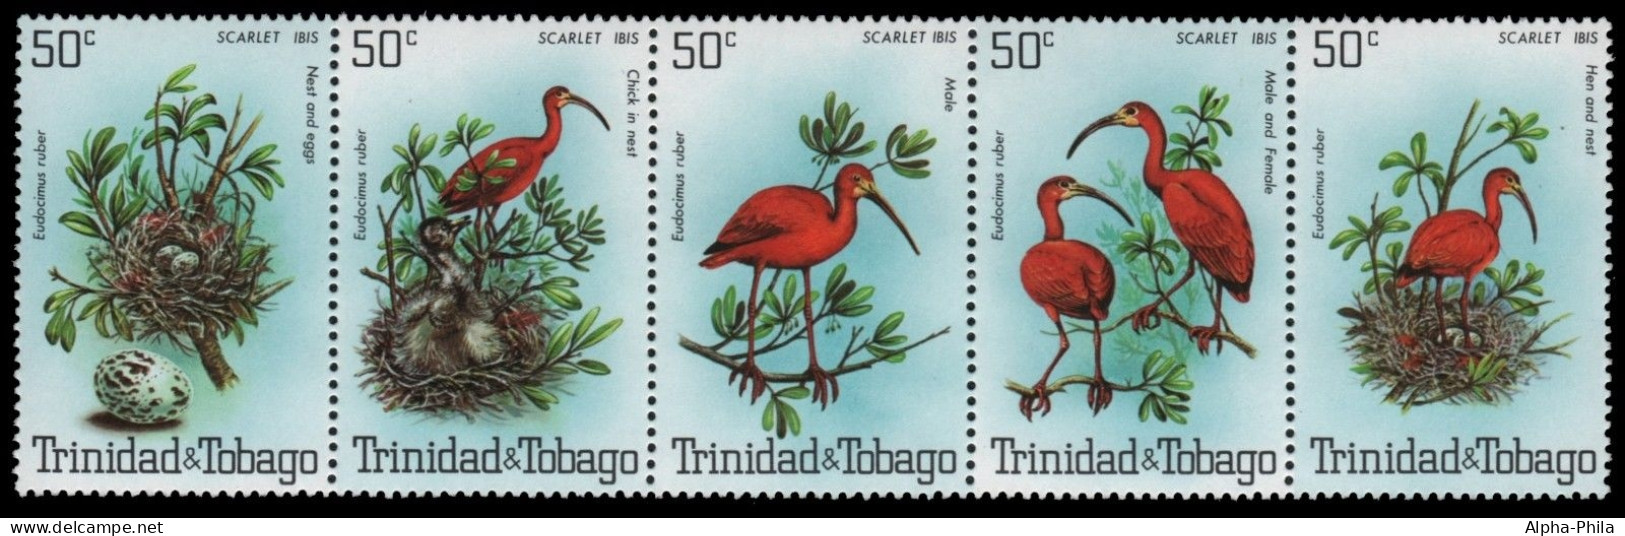 Trinidad & Tobago 1980 - Mi-Nr. 411-415 ** - MNH - Vögel / Birds - Trinidad & Tobago (1962-...)